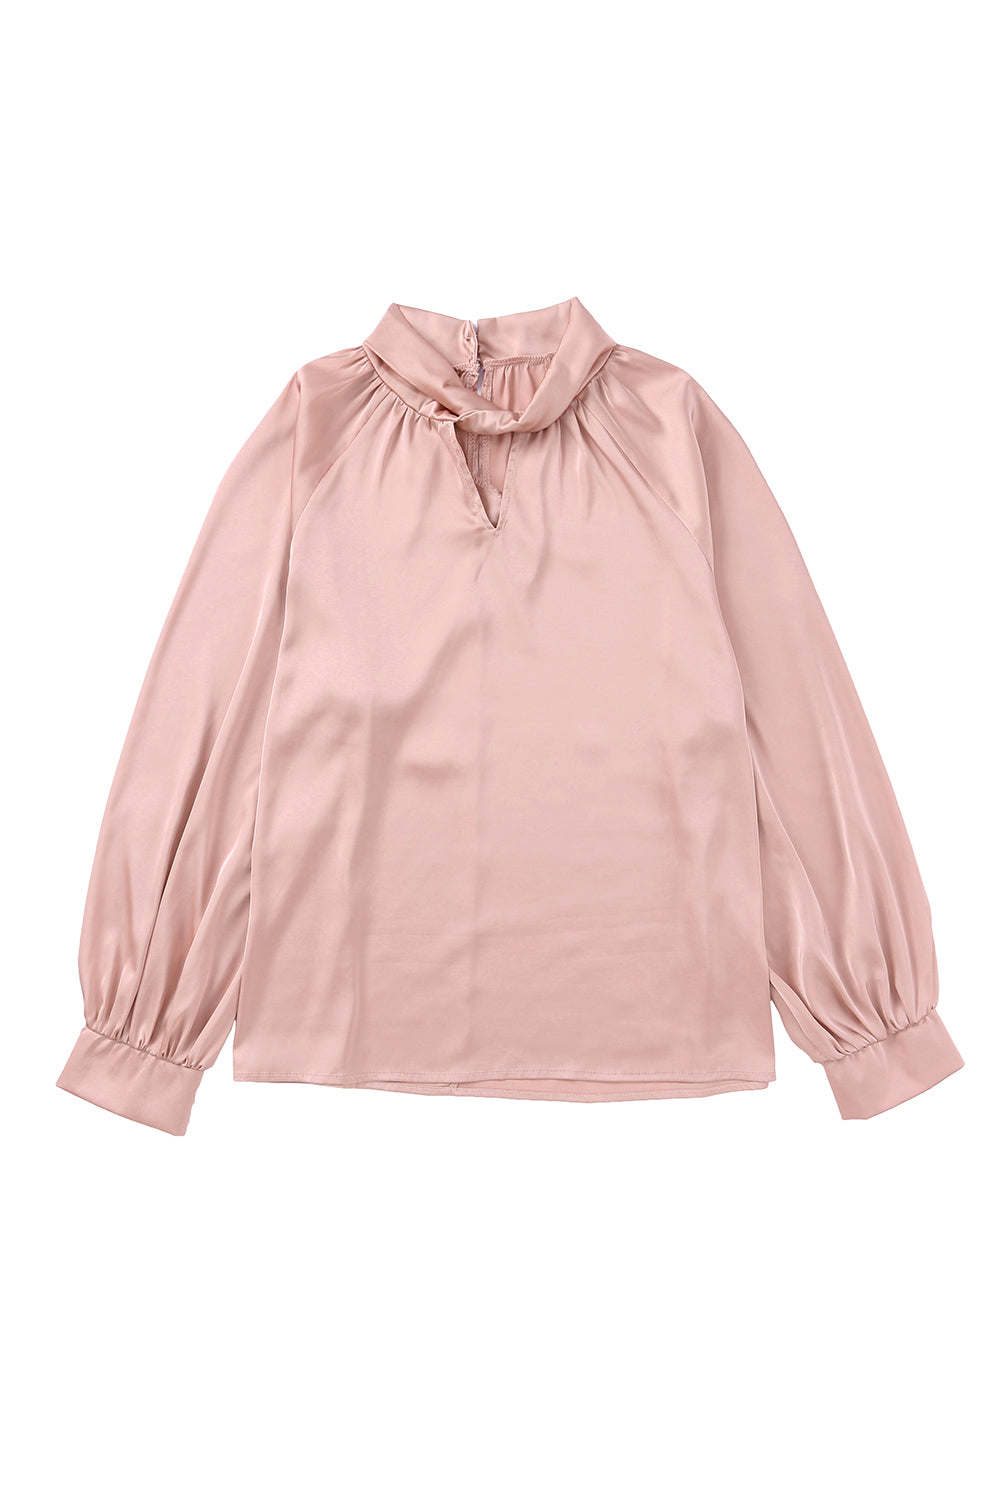 Rožnata satenasta bluza z visokim ovratnikom in napihnjenimi rokavi